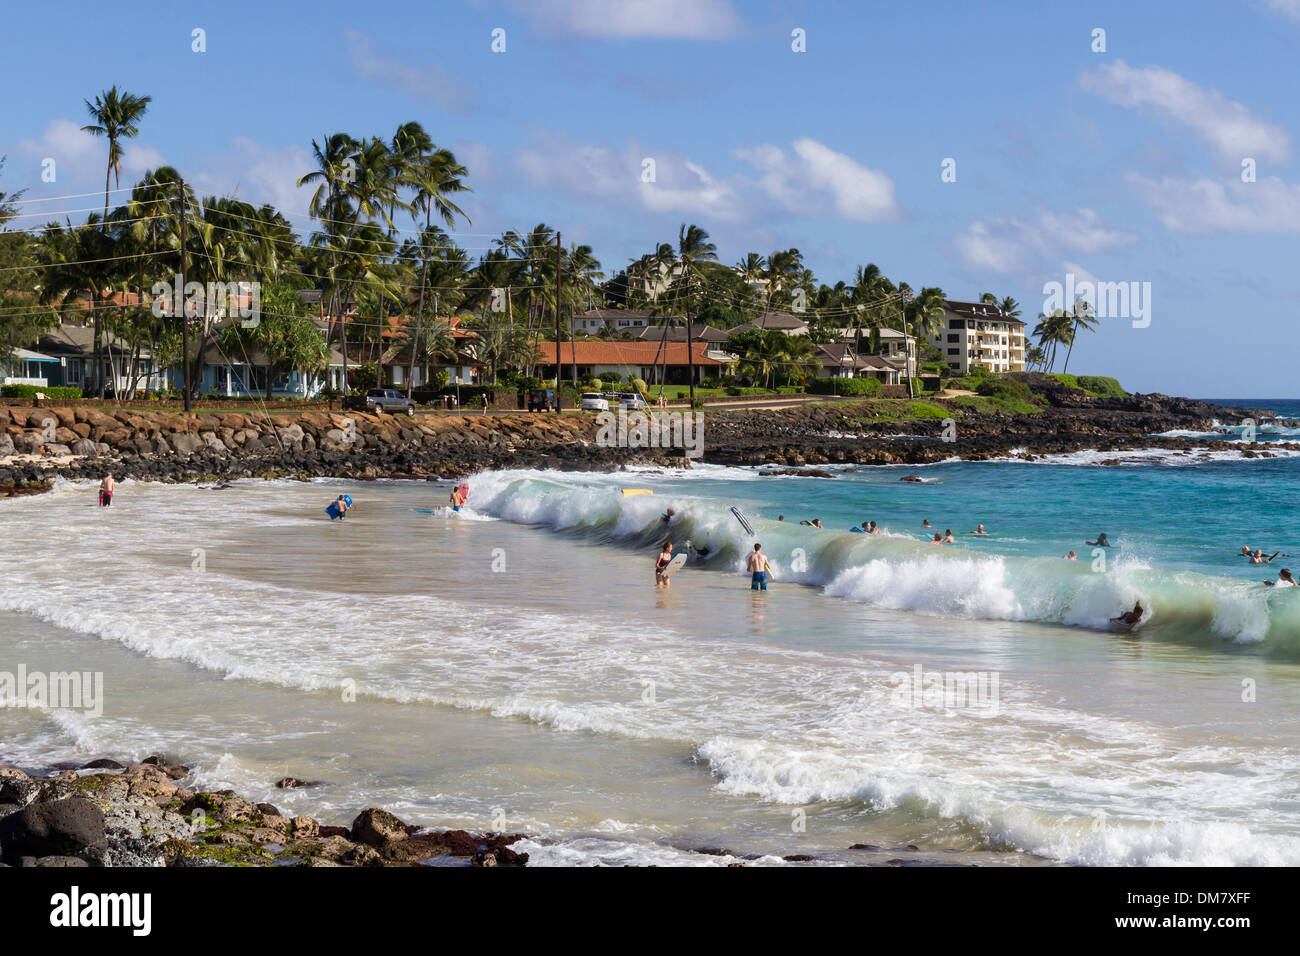 USA, Hawaii, Kauai, Poipu beach Stock Photo